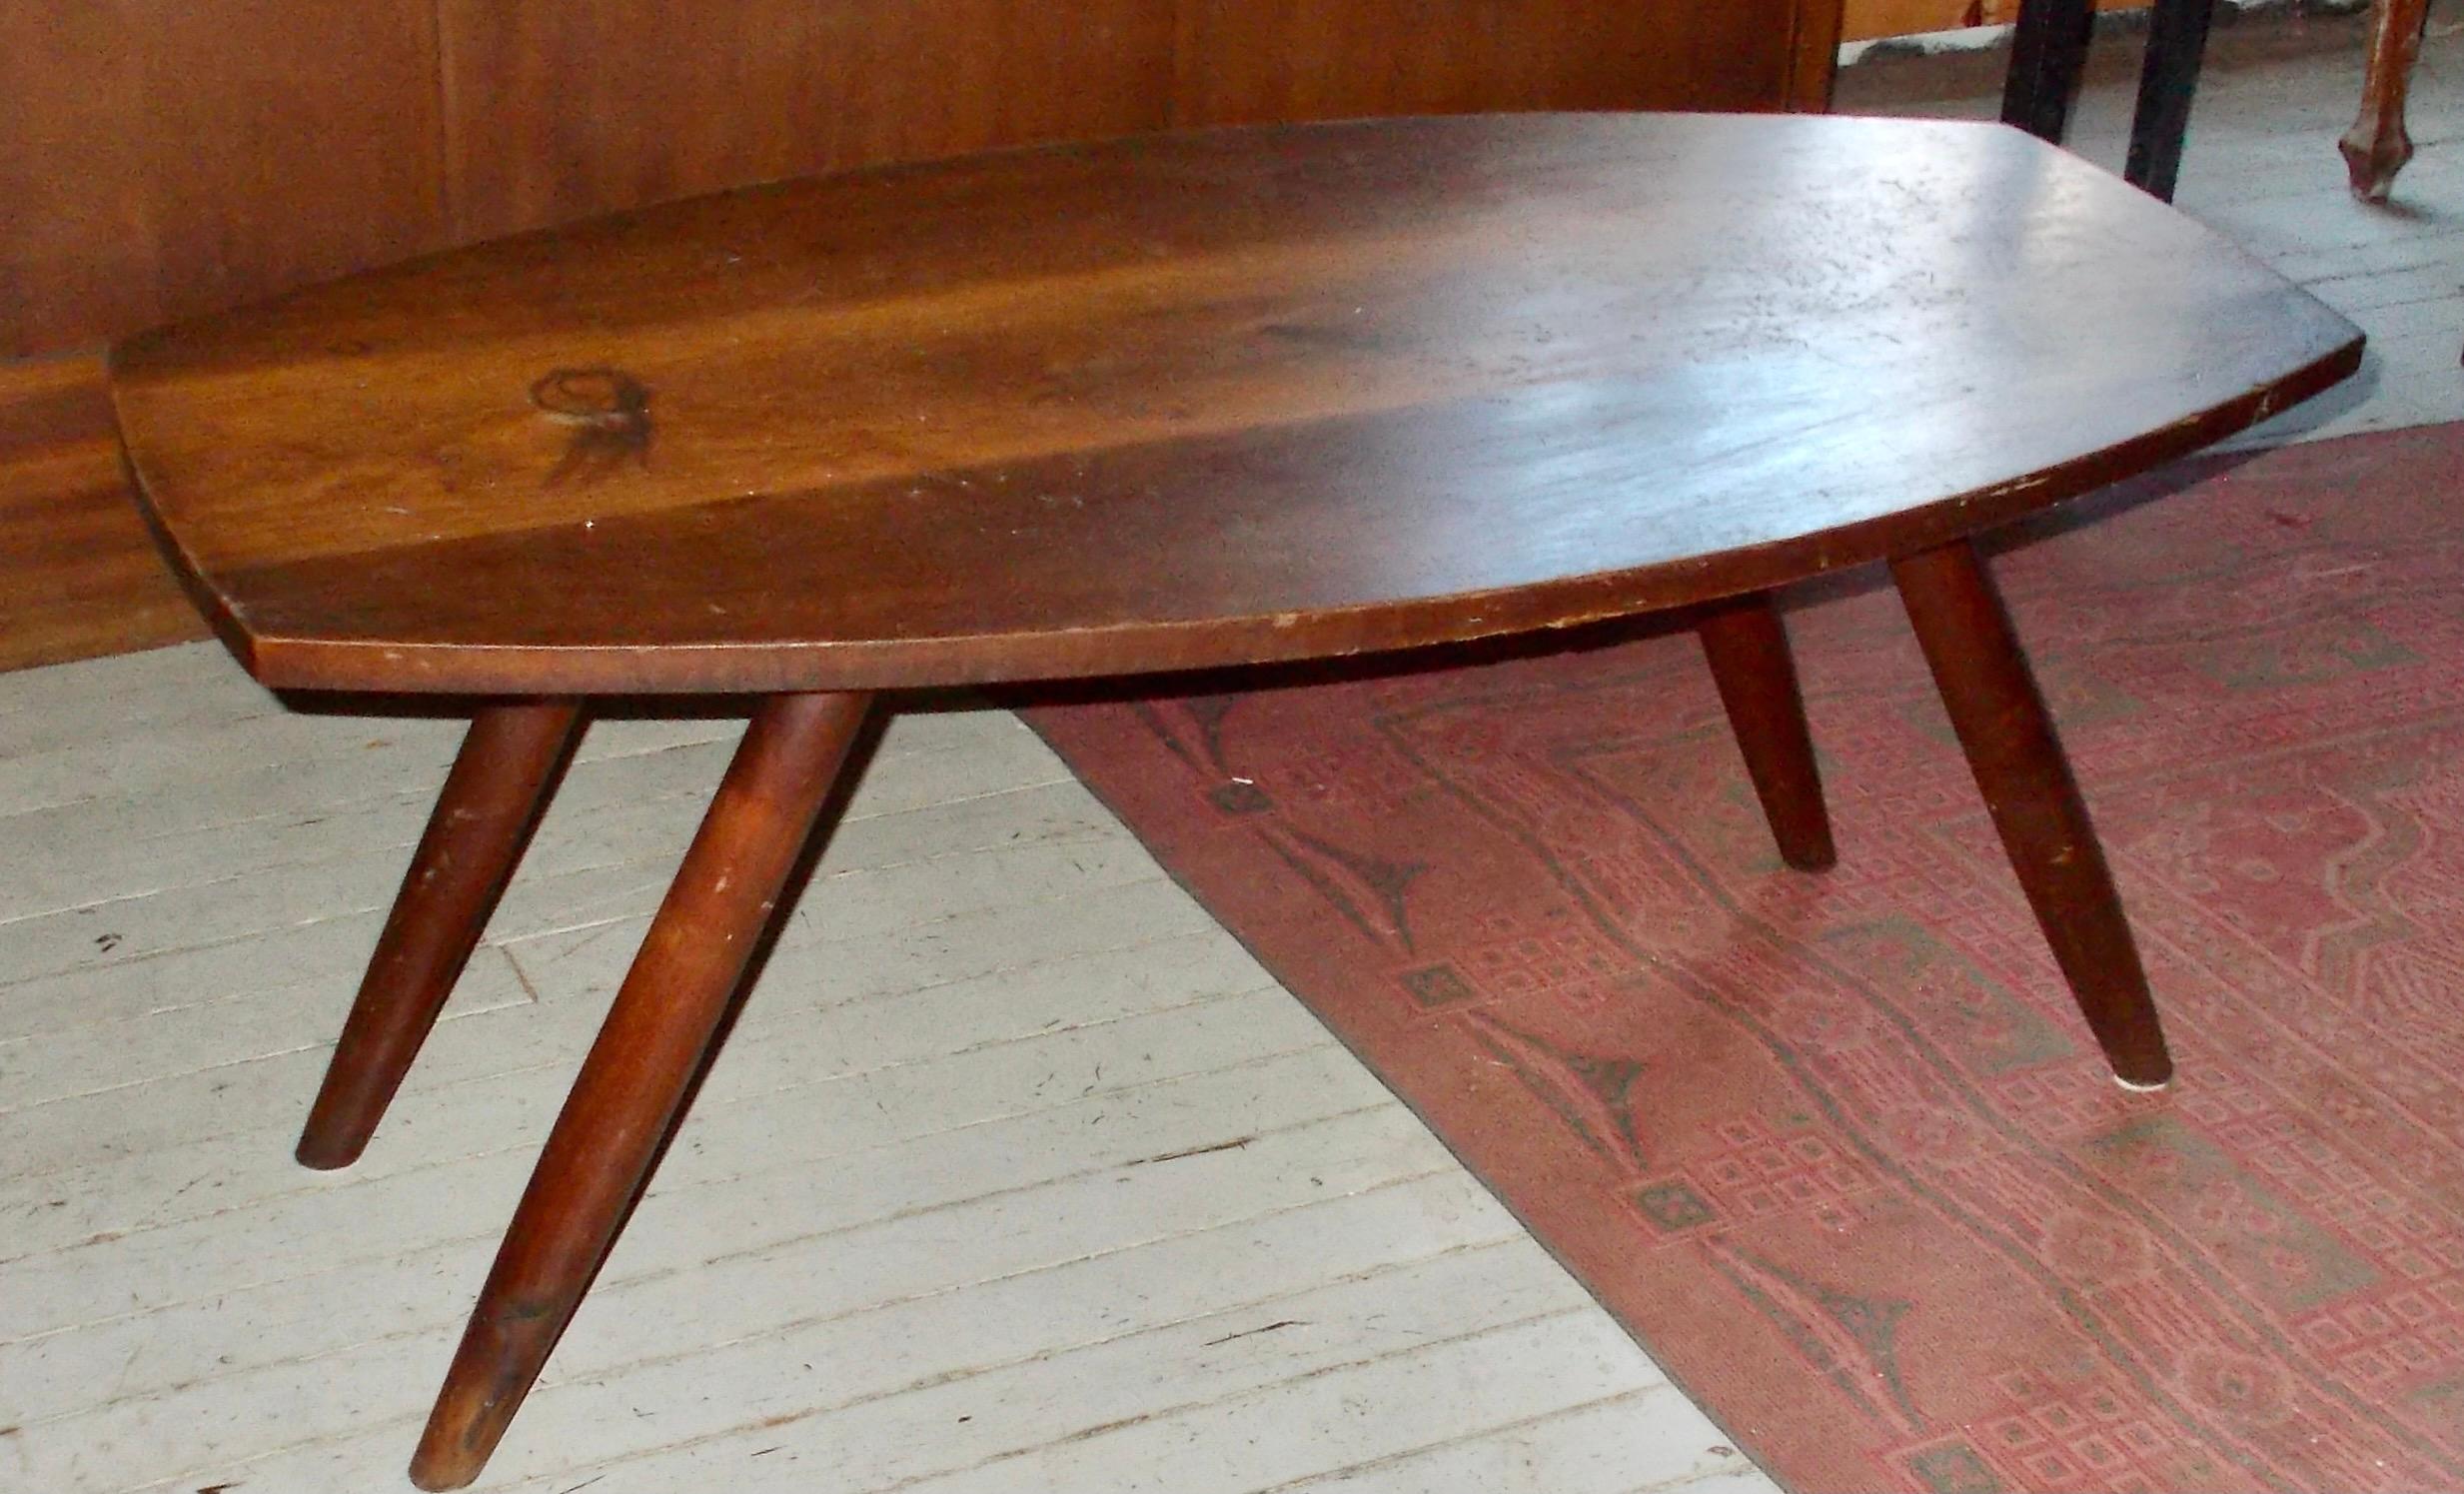 Une petite table basse Nakashima à pieds tournés de la fin des années 40/début des années 50, intacte, avec sa finition originale. Les pieds courbes typiques à section ronde sont fixés au fond de manière très astucieuse et sûre. Non marqué.